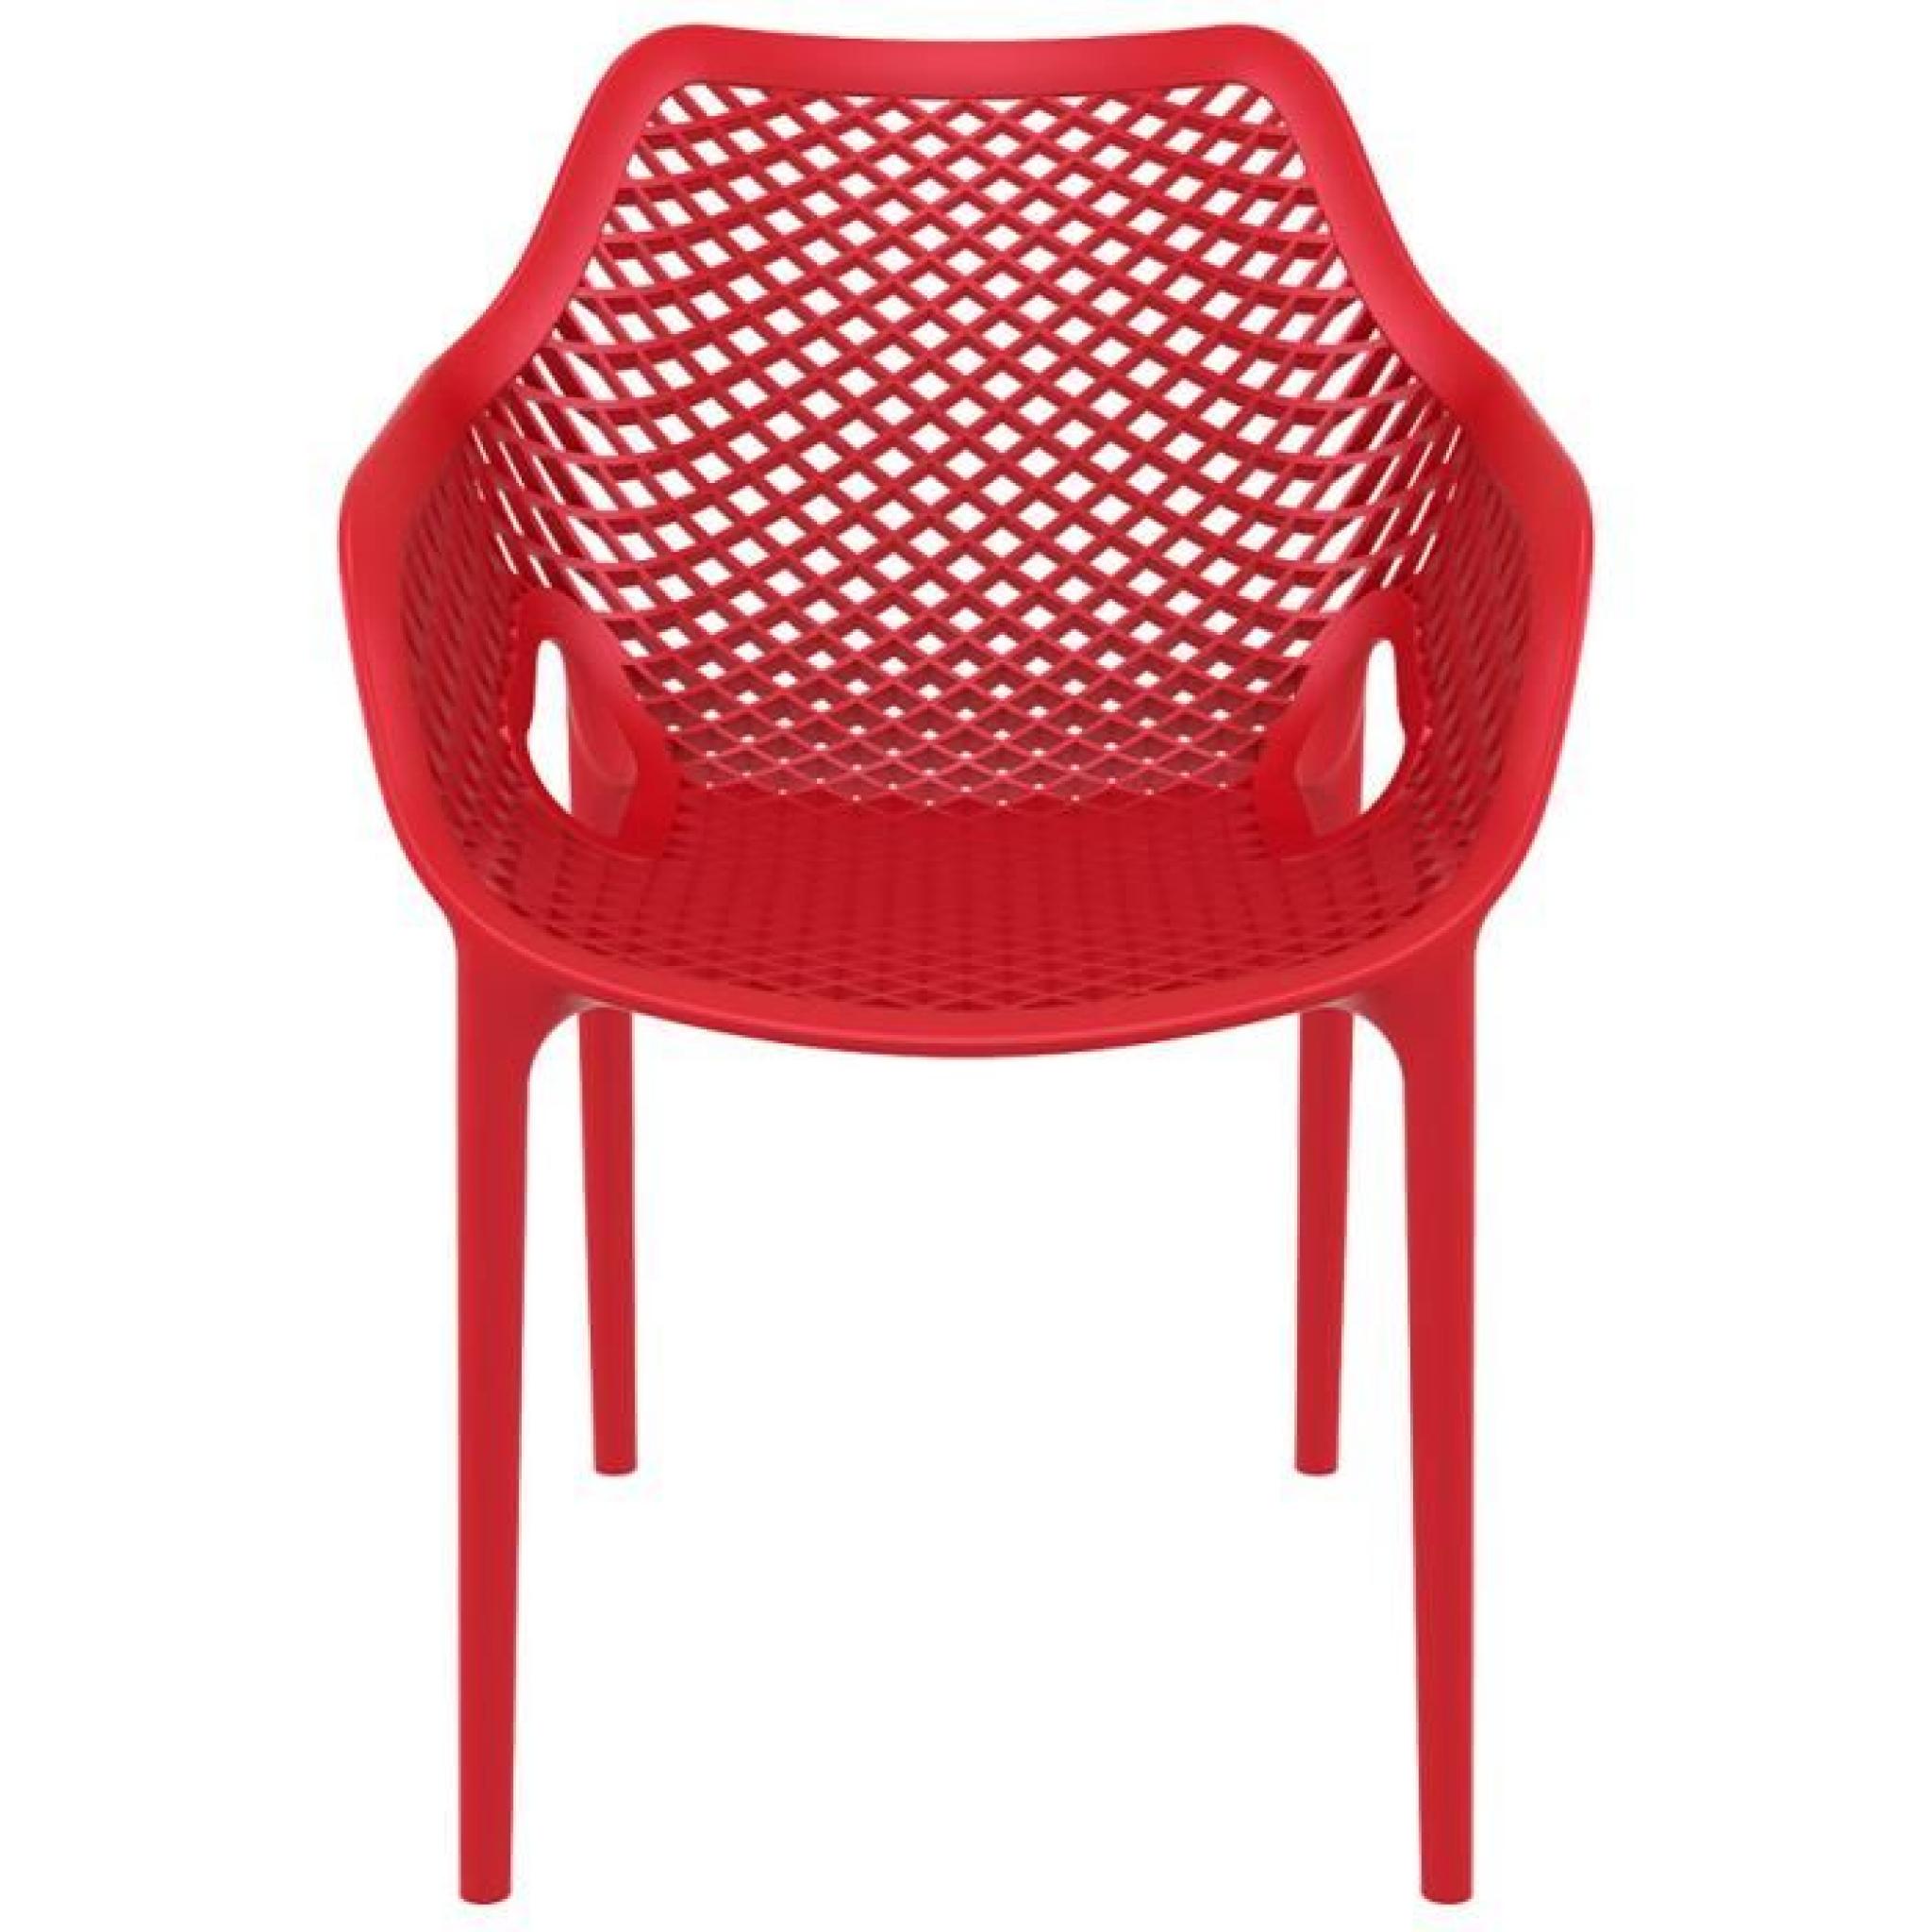 Chaise de jardin / terrasse 'SISTER' rouge en matière plastique pas cher